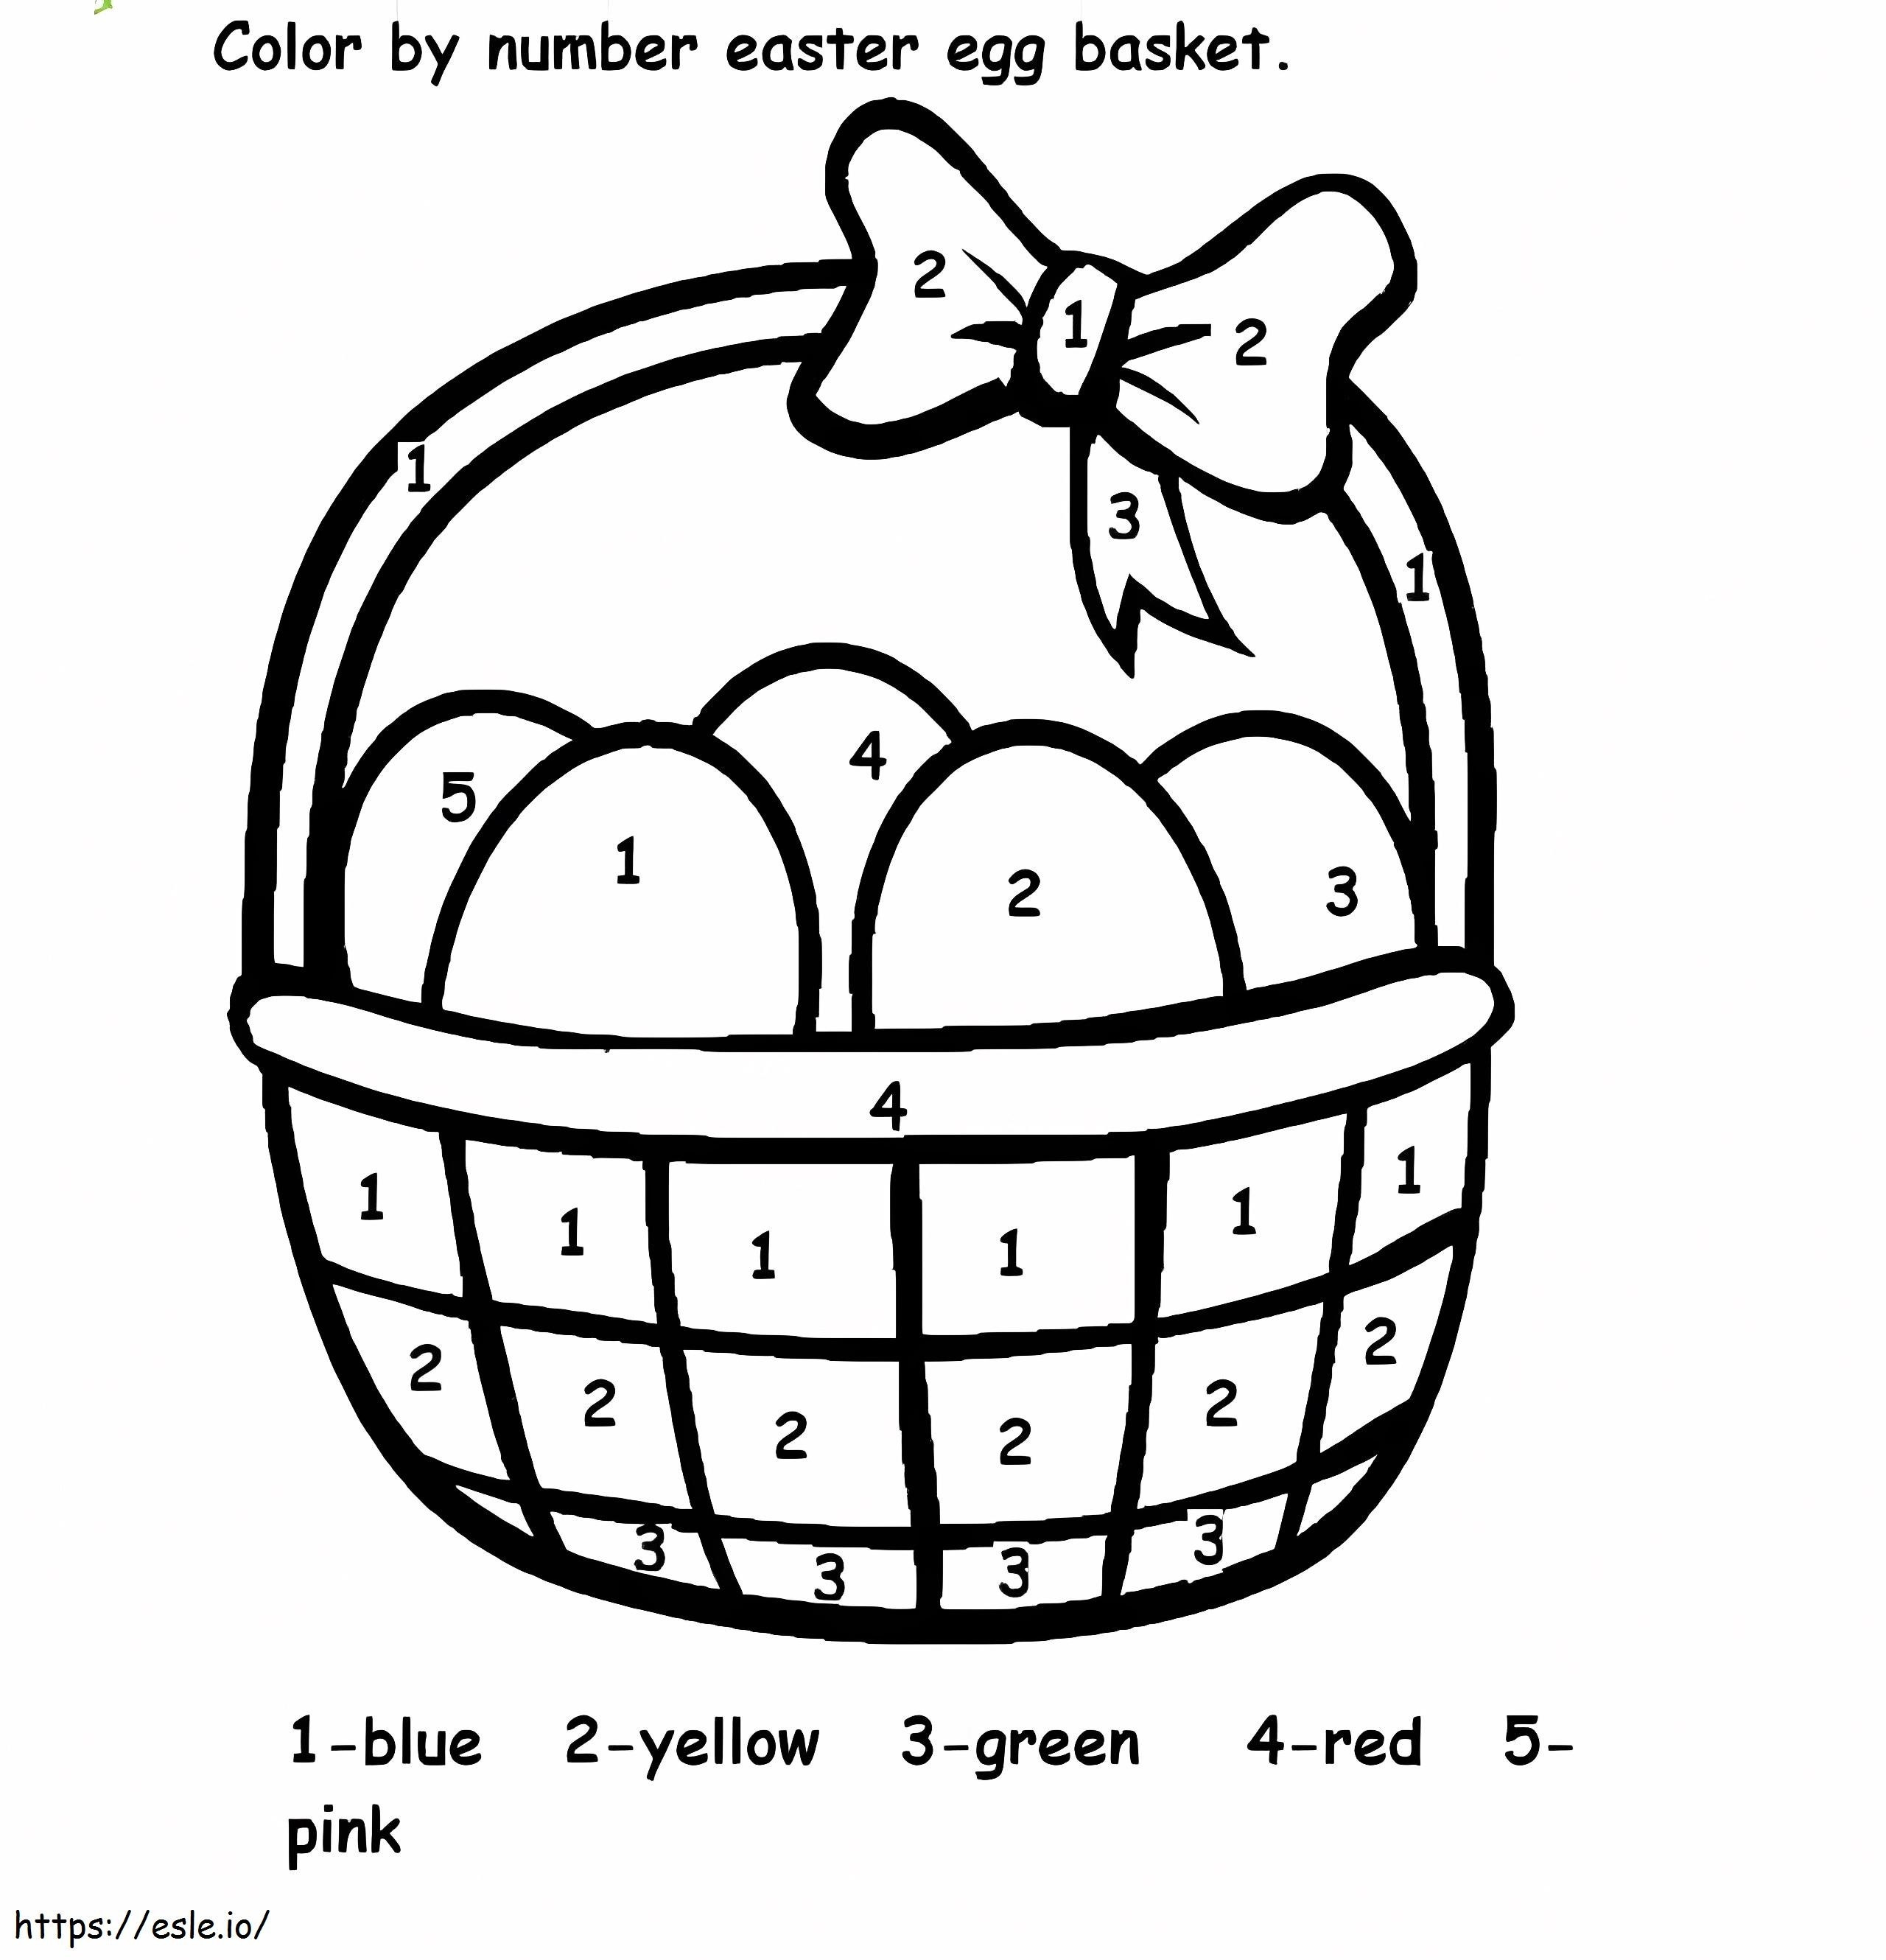 Colore del cestino delle uova di Pasqua per numero da colorare